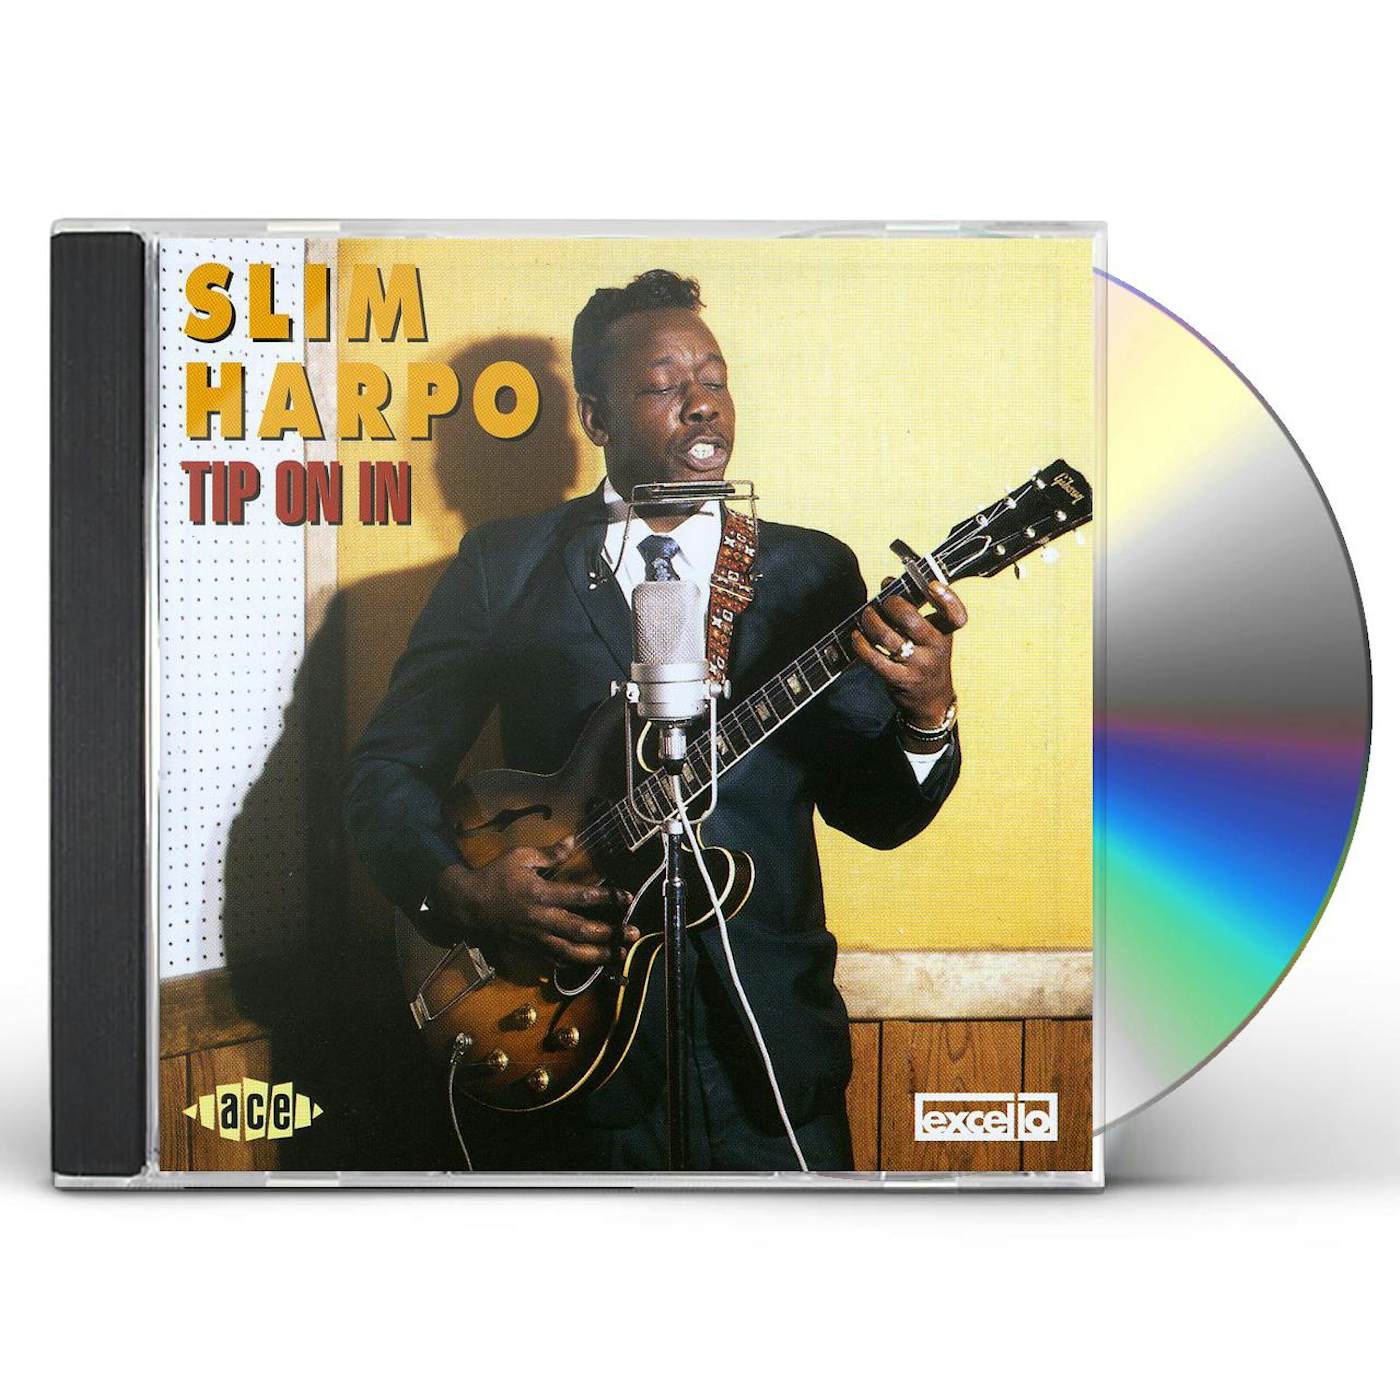 Slim Harpo TIP ON IN CD